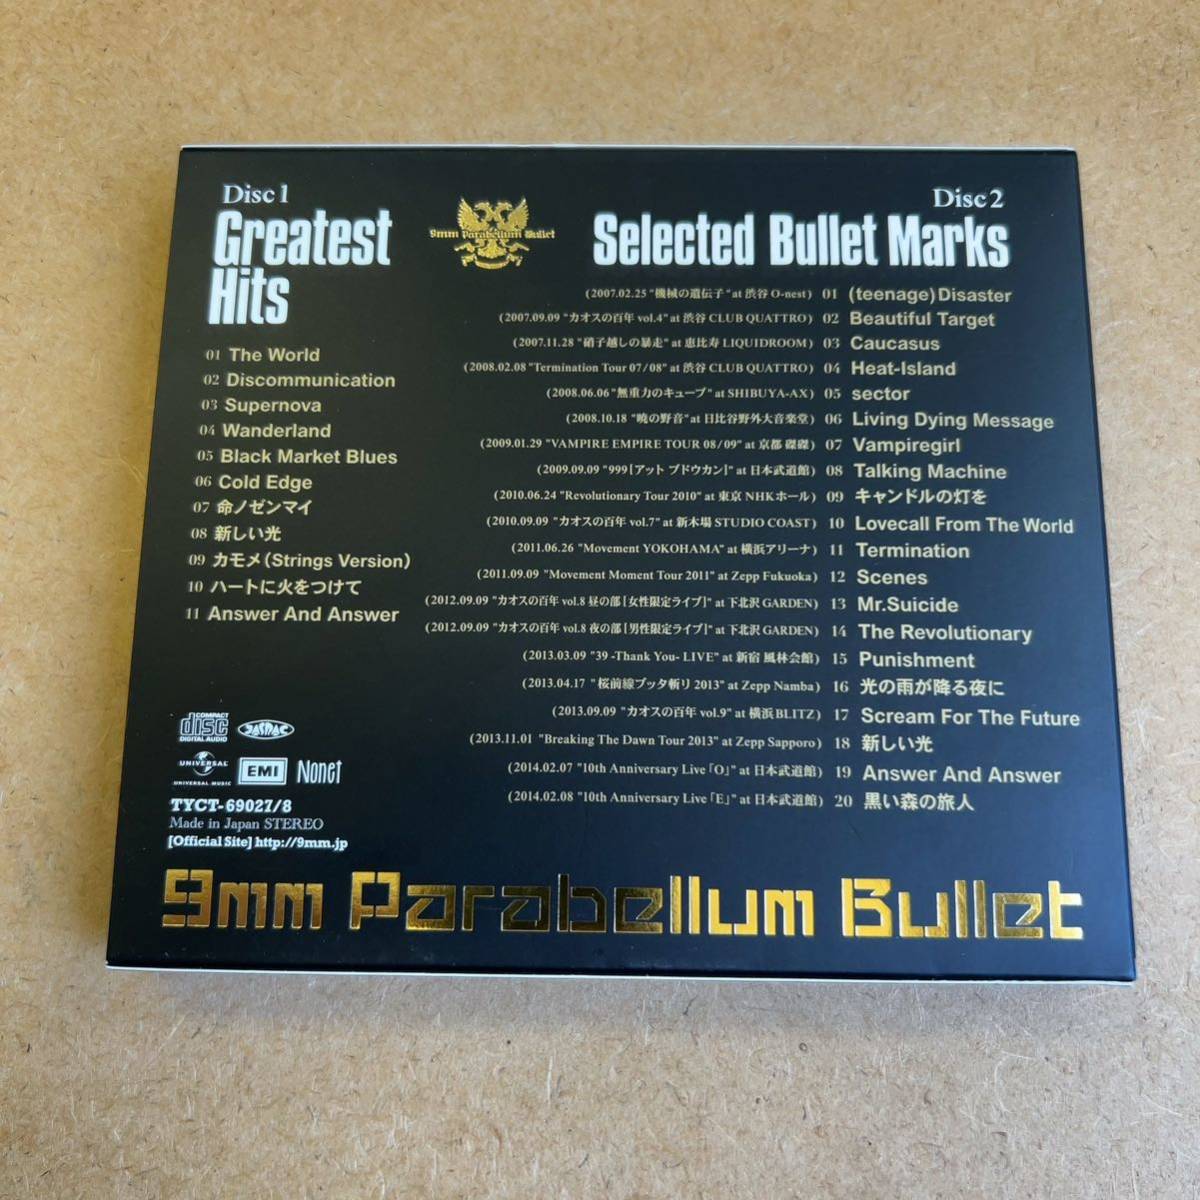 送料無料☆9mm Parabellum Bullet』初回限定盤CD＋CD☆スリーブケース☆美品☆ベストアルバム☆326_画像2